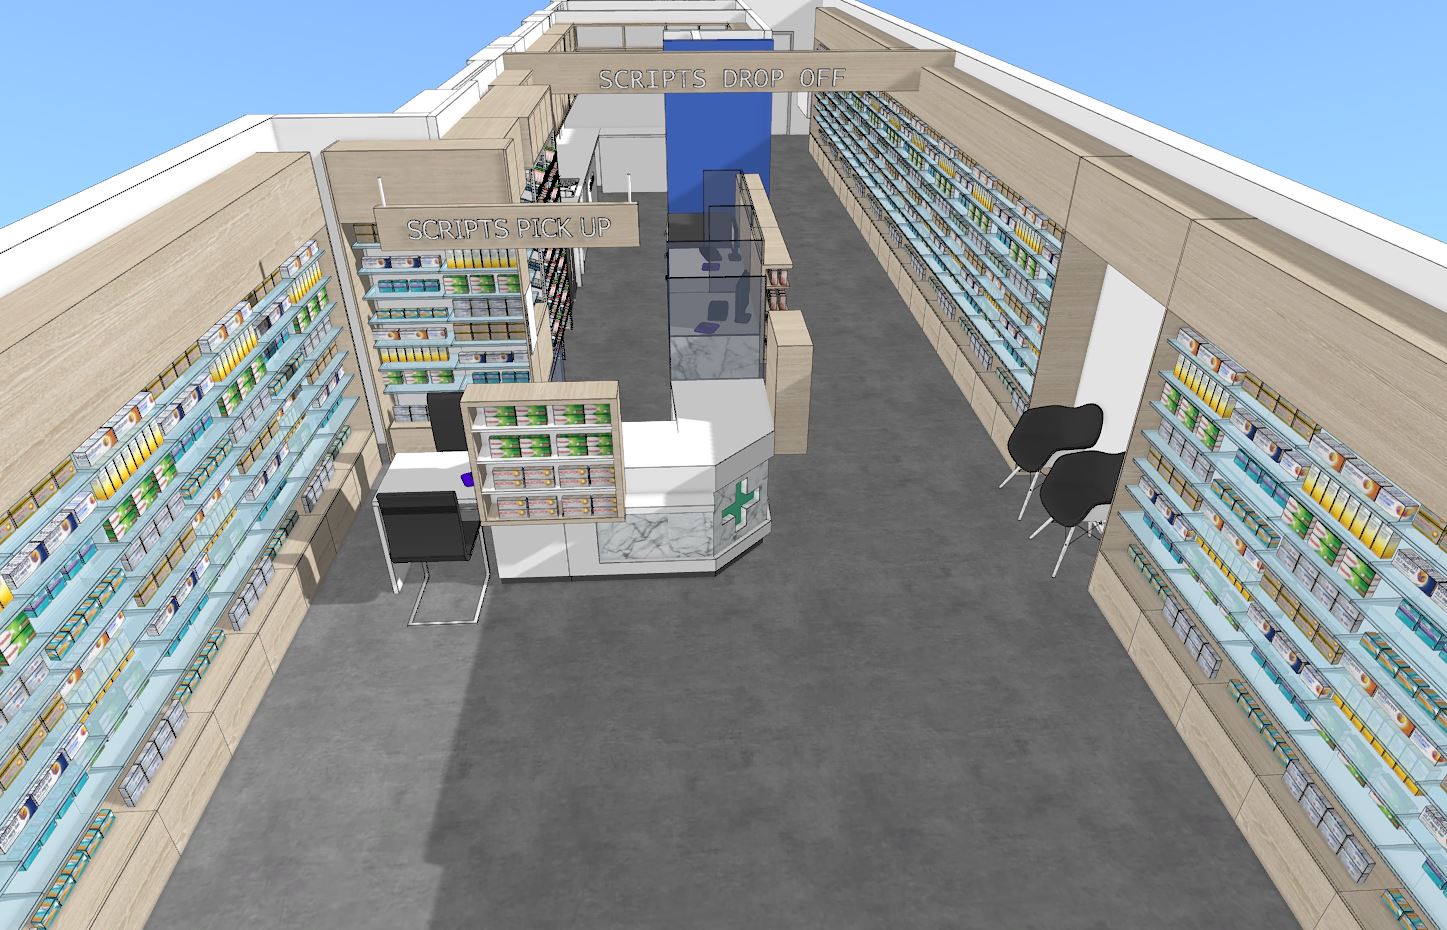 Pharmacy floor plan design